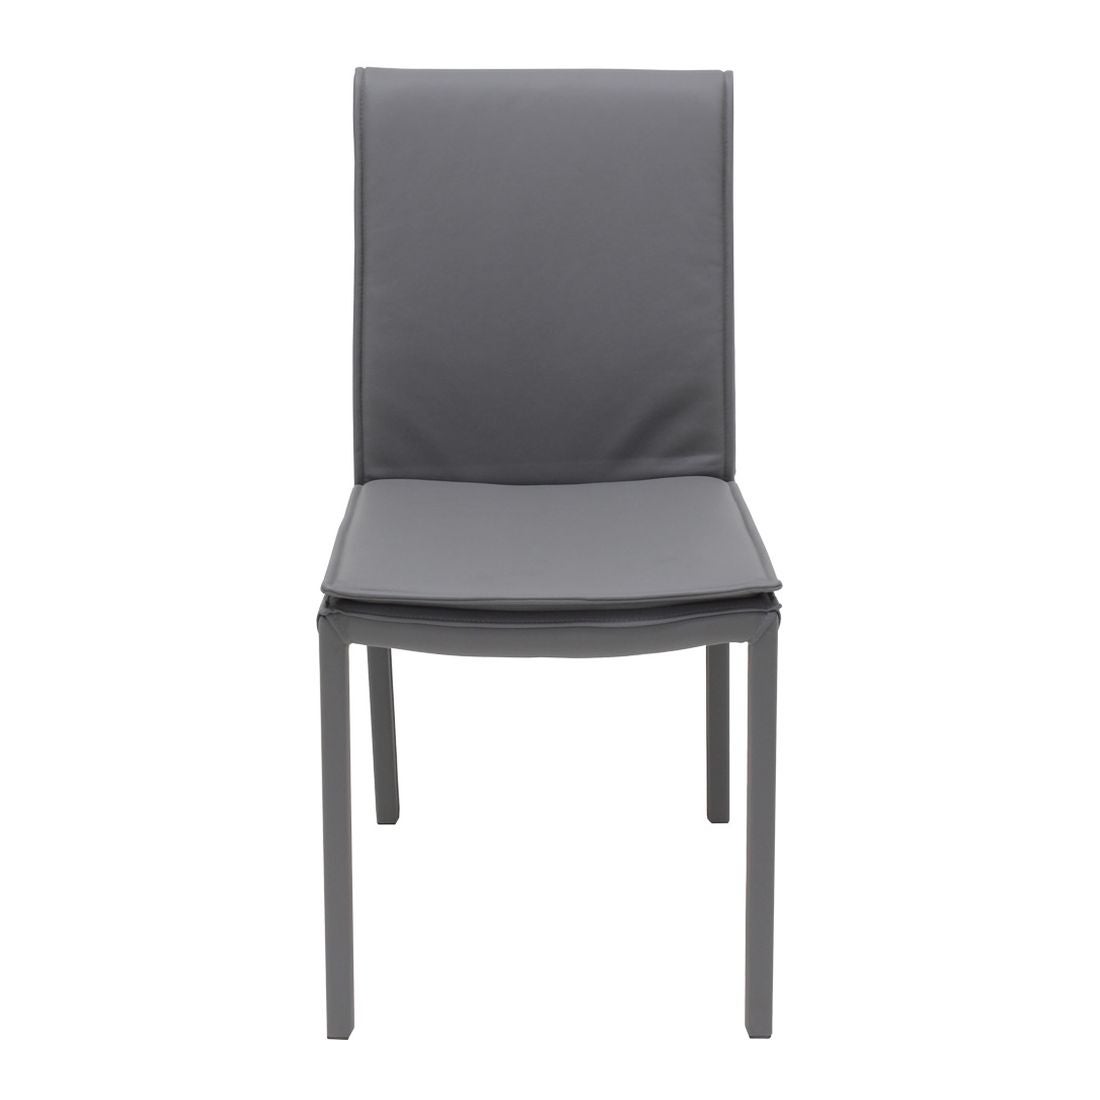 เก้าอี้ทานอาหาร เก้าอี้เหล็กเบาะหนัง รุ่น You-SB Design Square